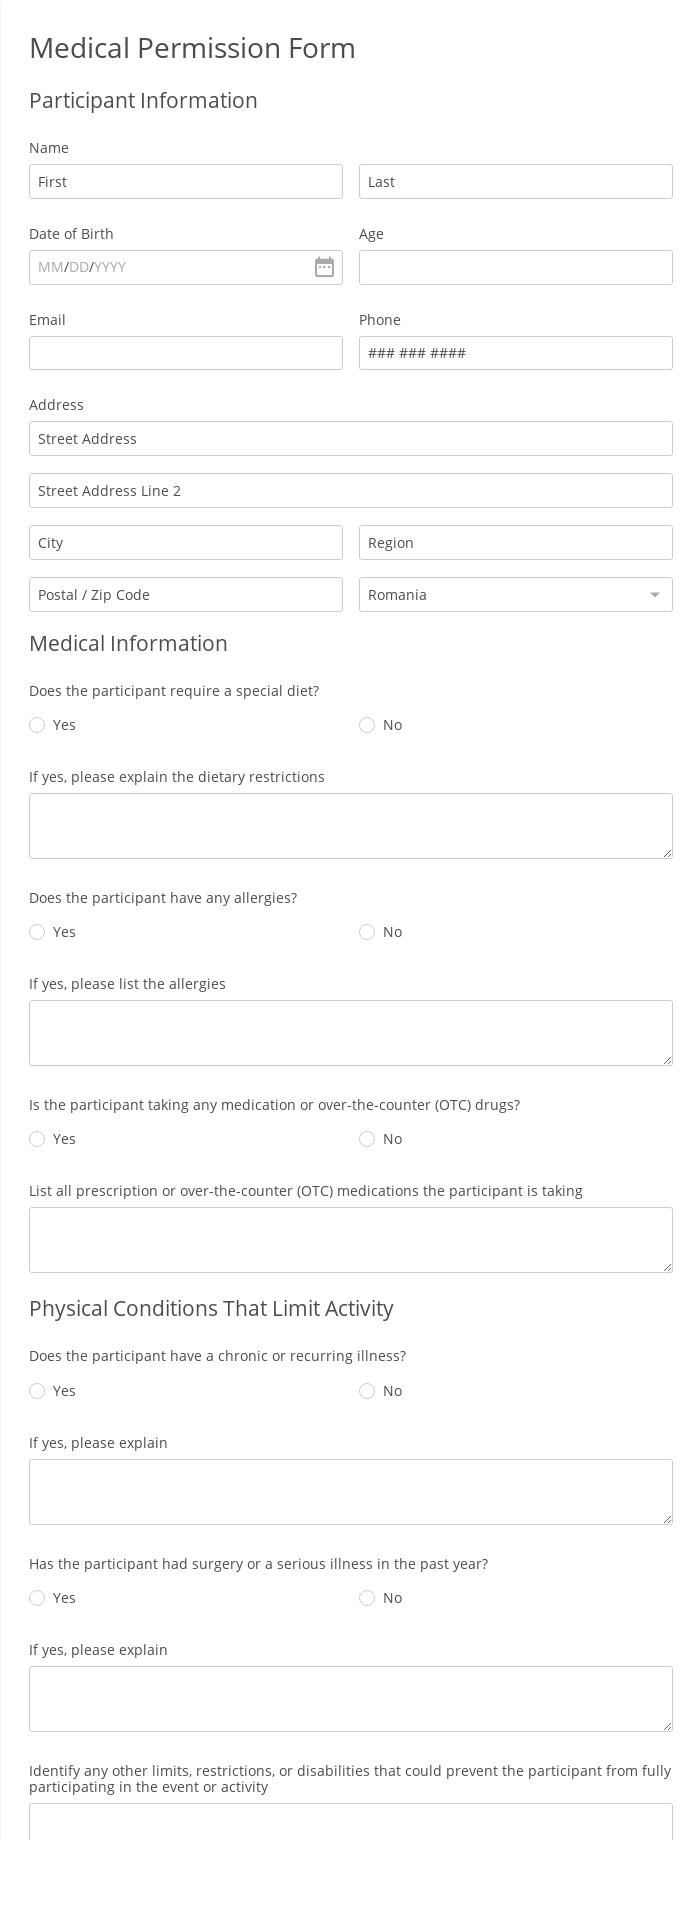 Medical Permission Form